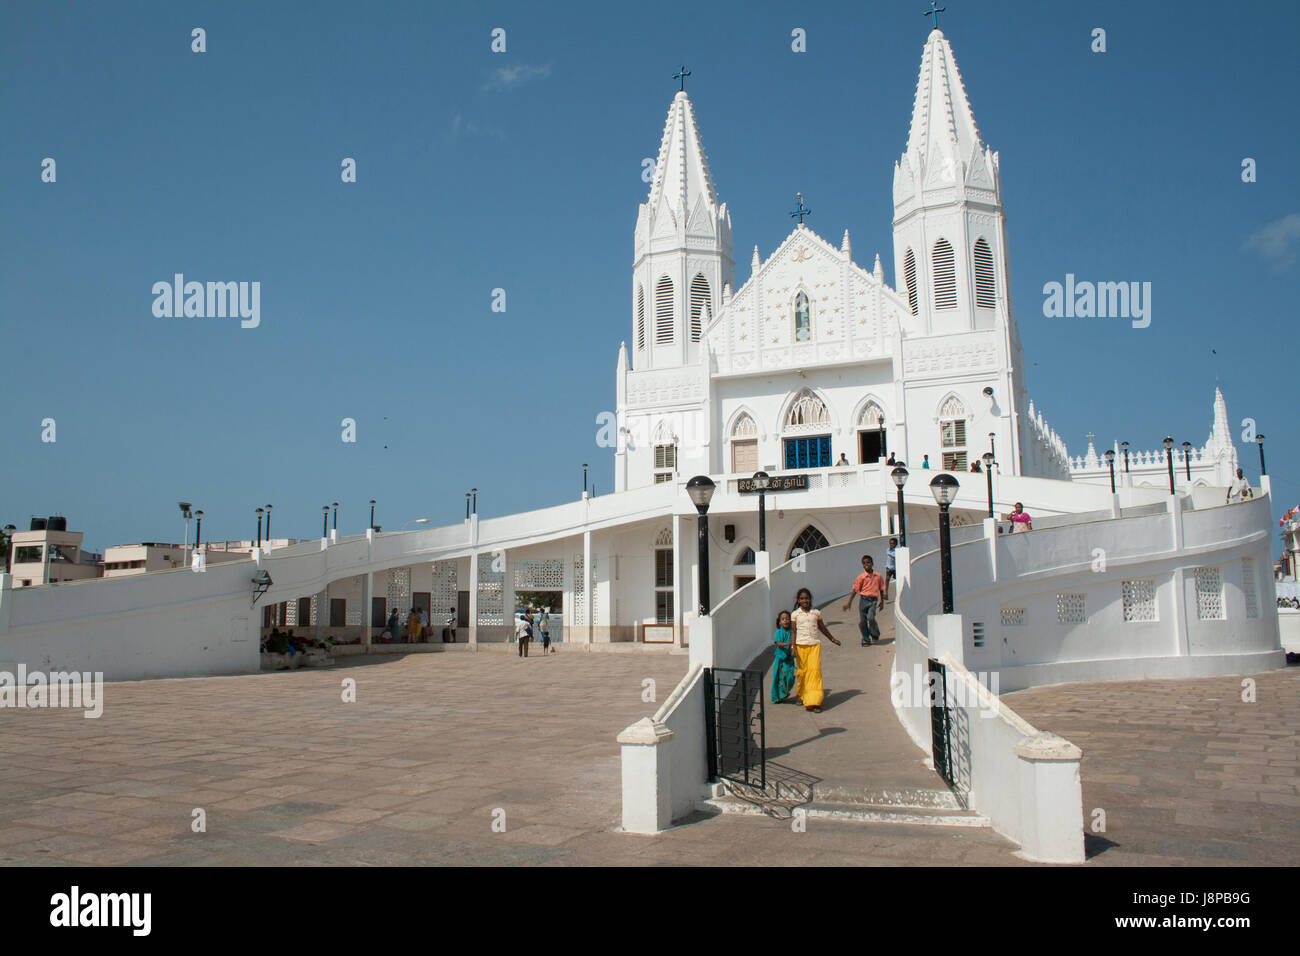 Iglesia de Vailankanni exterior y turistas, Tamil Nadu, India Foto de stock